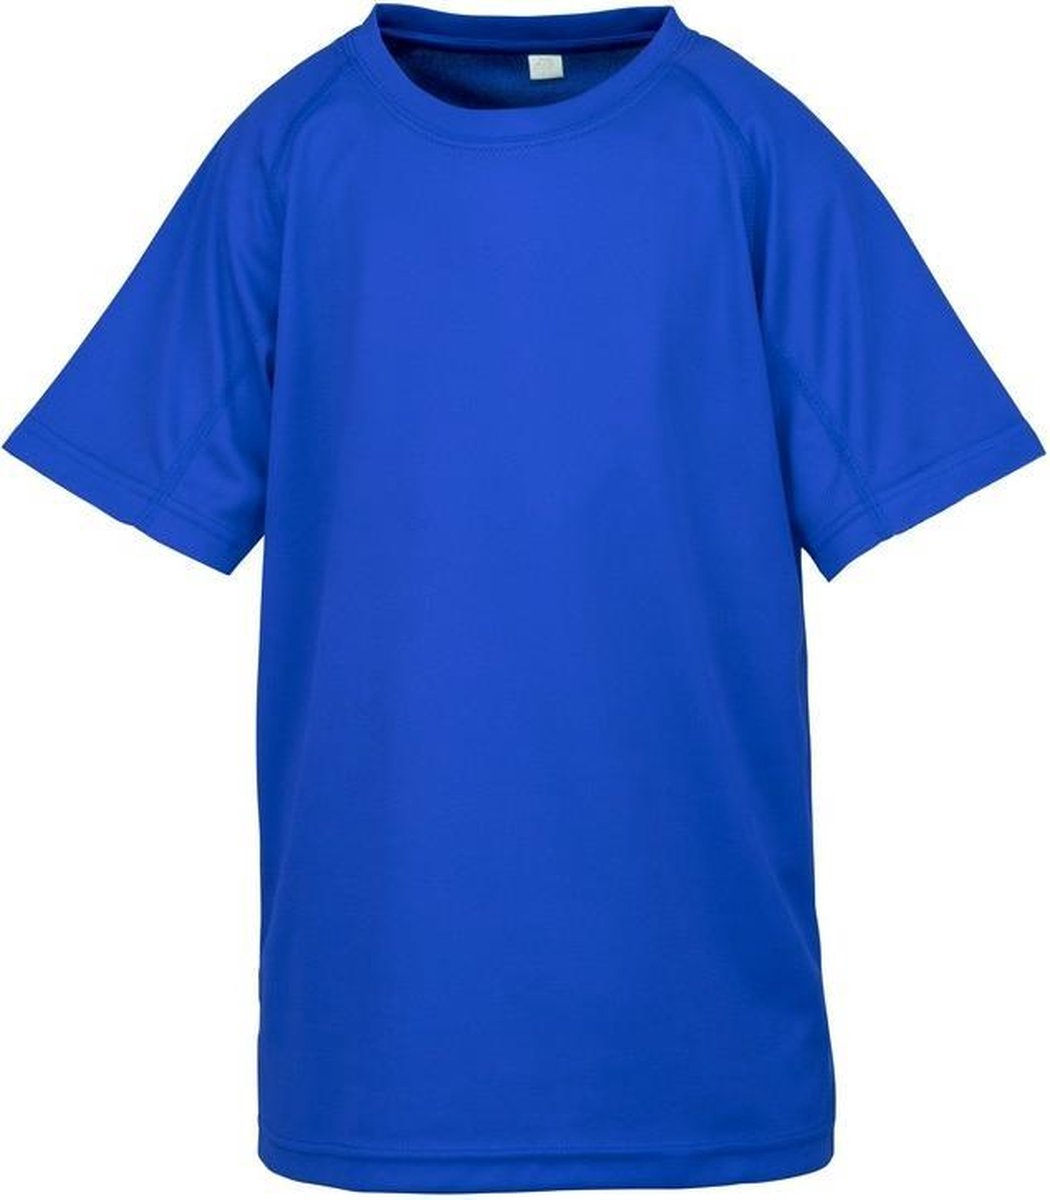 Spiro Childrens Boys Performance Aircool T-Shirt (Koningsblauw)